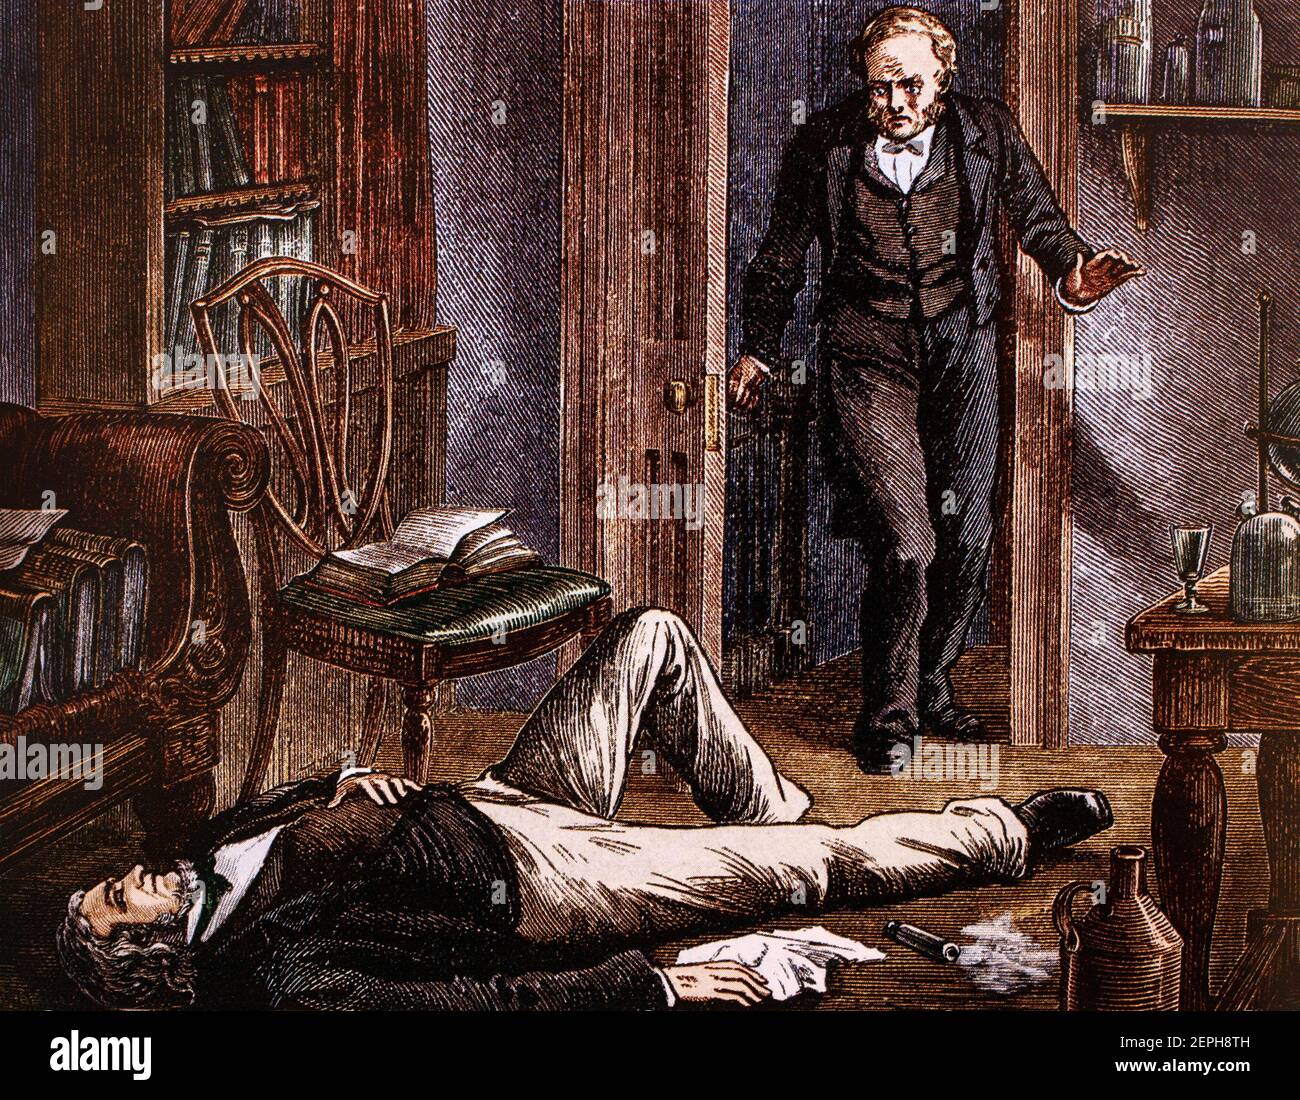 Sir James Young Simpson (1811-1870) était un obstétricien écossais et une figure importante dans l'histoire de la médecine. Il a été le premier médecin à démontrer les propriétés anesthésiques du chloroforme sur les humains et a contribué à populariser son utilisation en médecine. Dr Simpson a utilisé pour essayer de nouveaux produits chimiques pour voir s'ils avaient un effet anesthésique. En 1847, il décide d'essayer le chloroforme, mais s'effondre soudainement pour reprendre conscience le lendemain matin. Réveillé par son maître d'hôtel, Simpson savait qu'il avait trouvé quelque chose qui pourrait être utilisé comme anesthésique. Banque D'Images